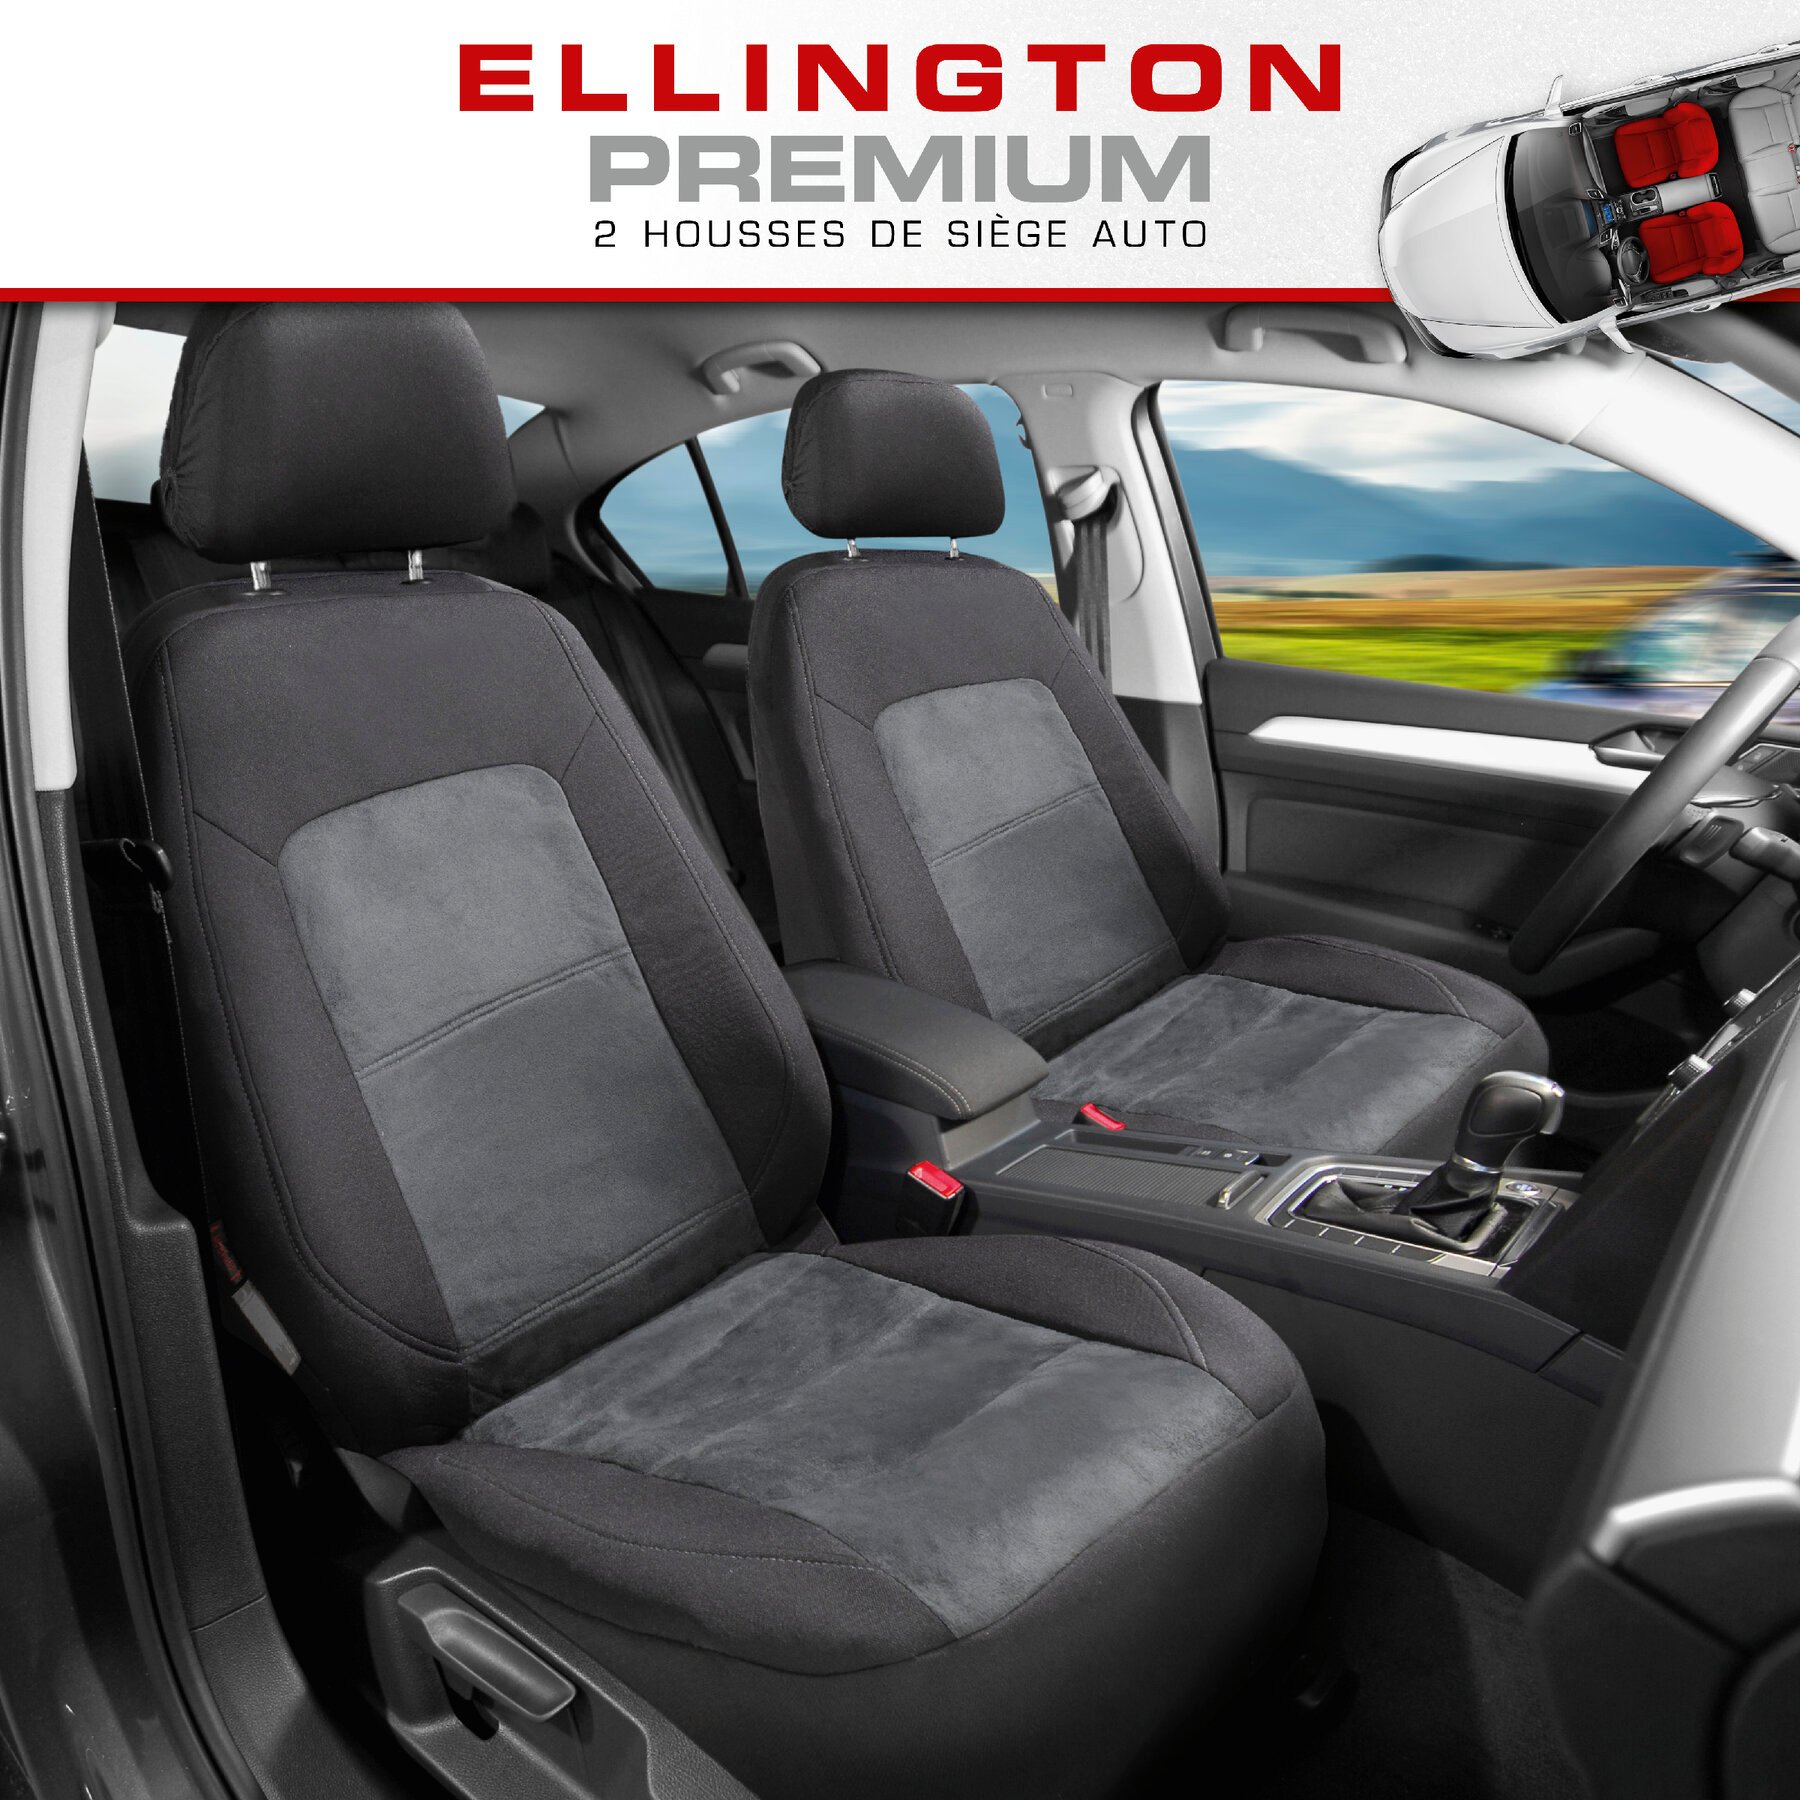 ZIPP IT Premium Housse de sièges Ellington pour deux sièges avant avec système de fermeture éclair noir/gris